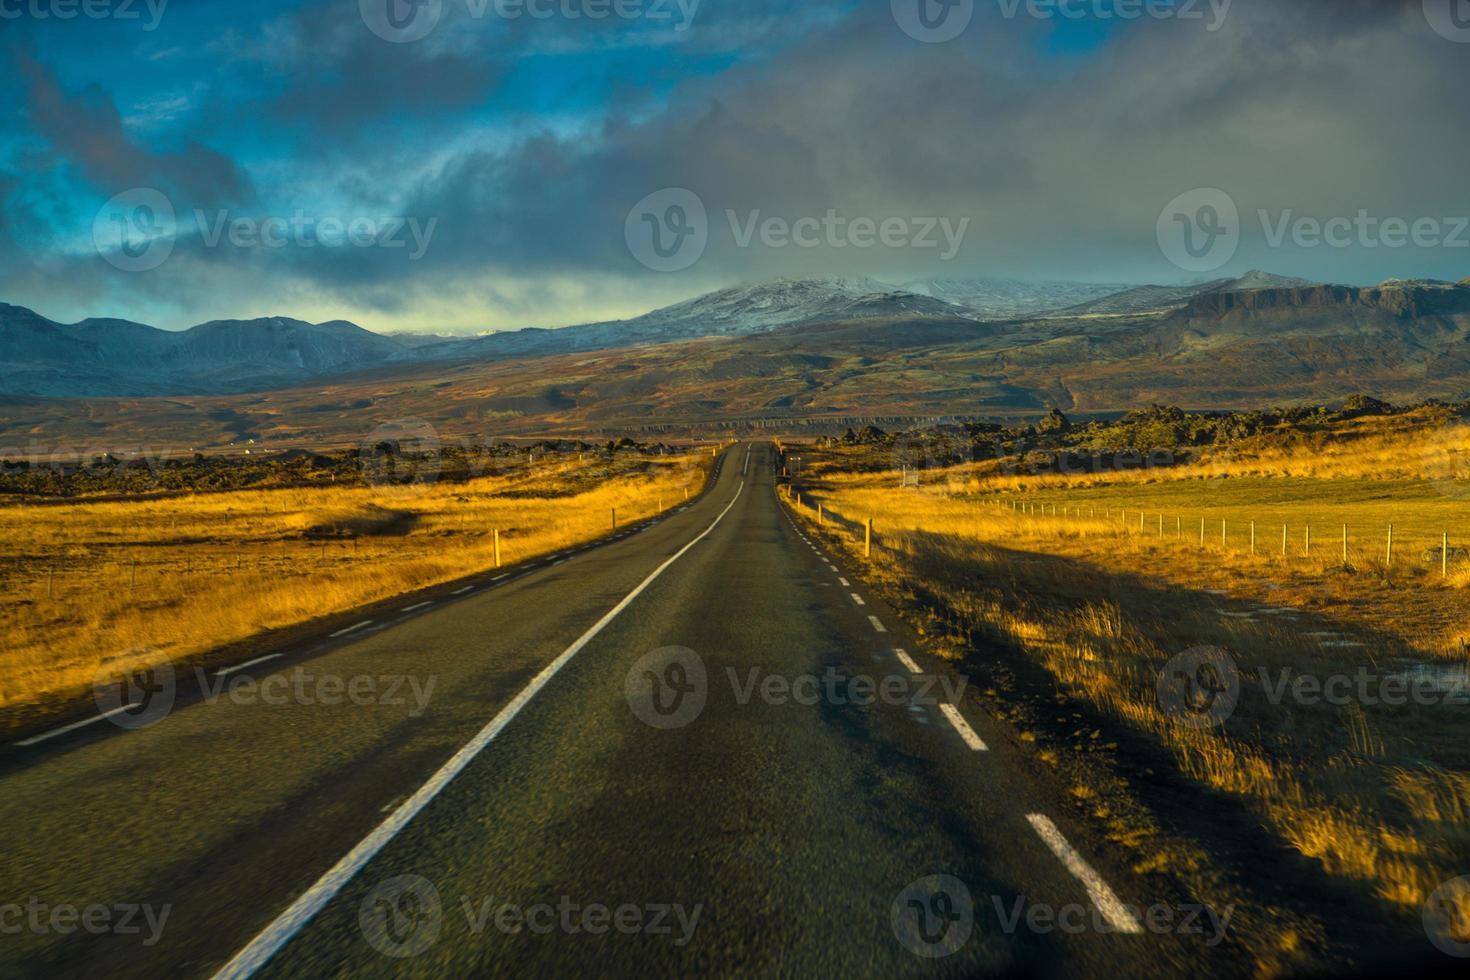 ruta 1 o carretera de circunvalación, o hringvegur, una carretera nacional que recorre islandia y conecta la mayor parte de las zonas habitadas del país foto